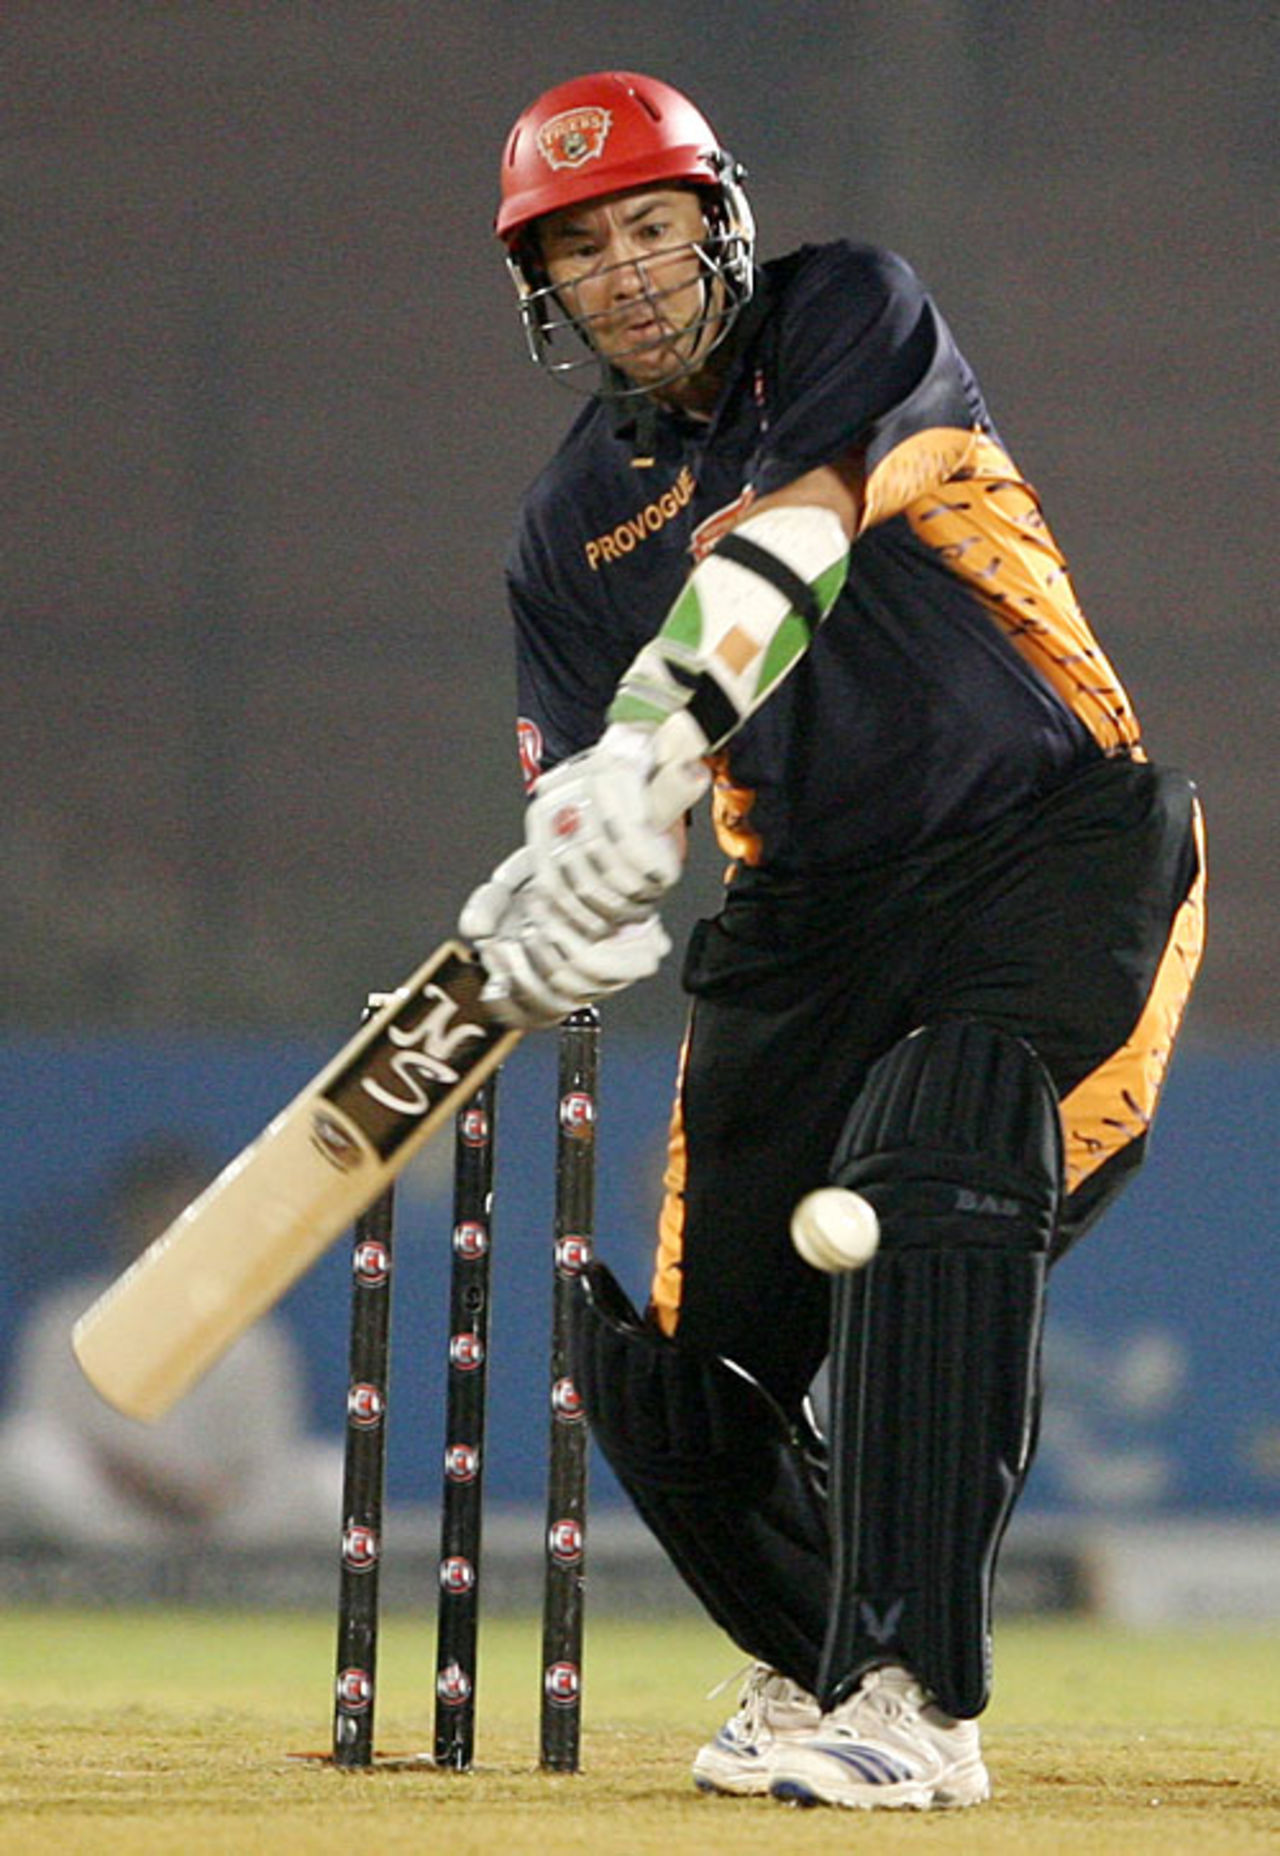 Craig McMillan hit 31 off 26 balls, Hyderabad Heroes v Royal Bengal Tigers, Ahmedabad, ICL, November 8, 2008